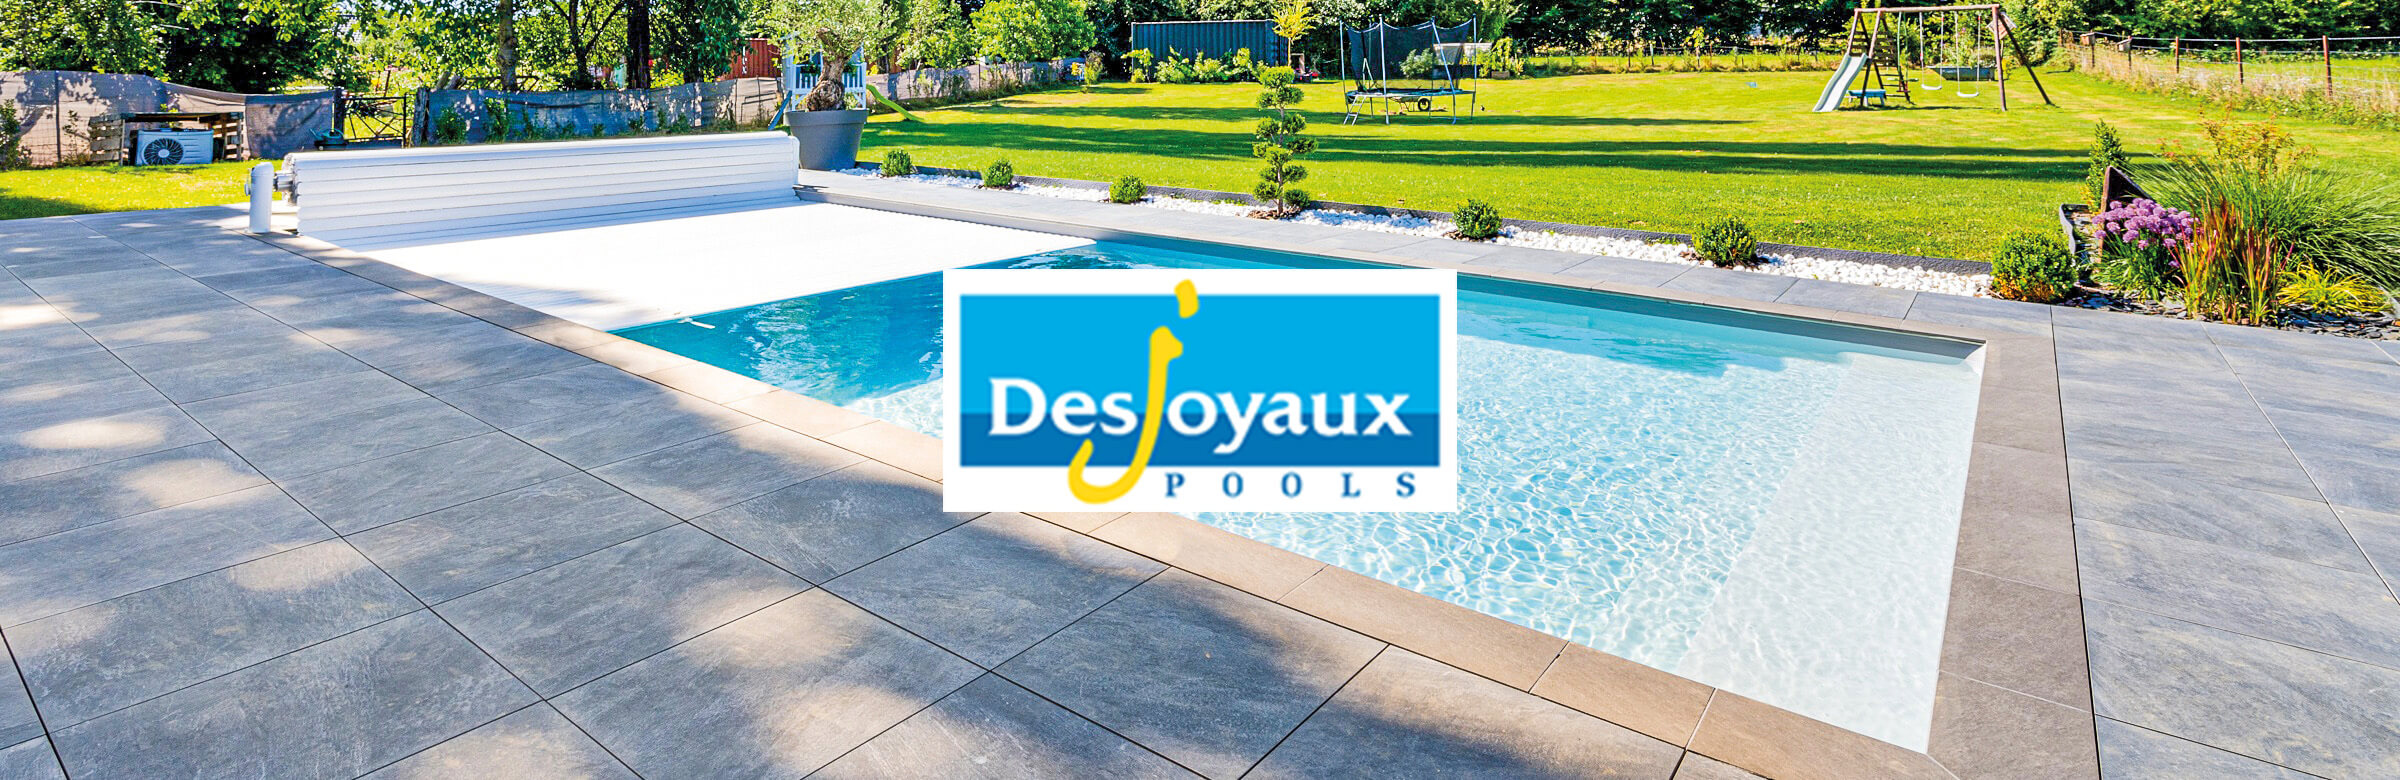 Desjoyaux Pools